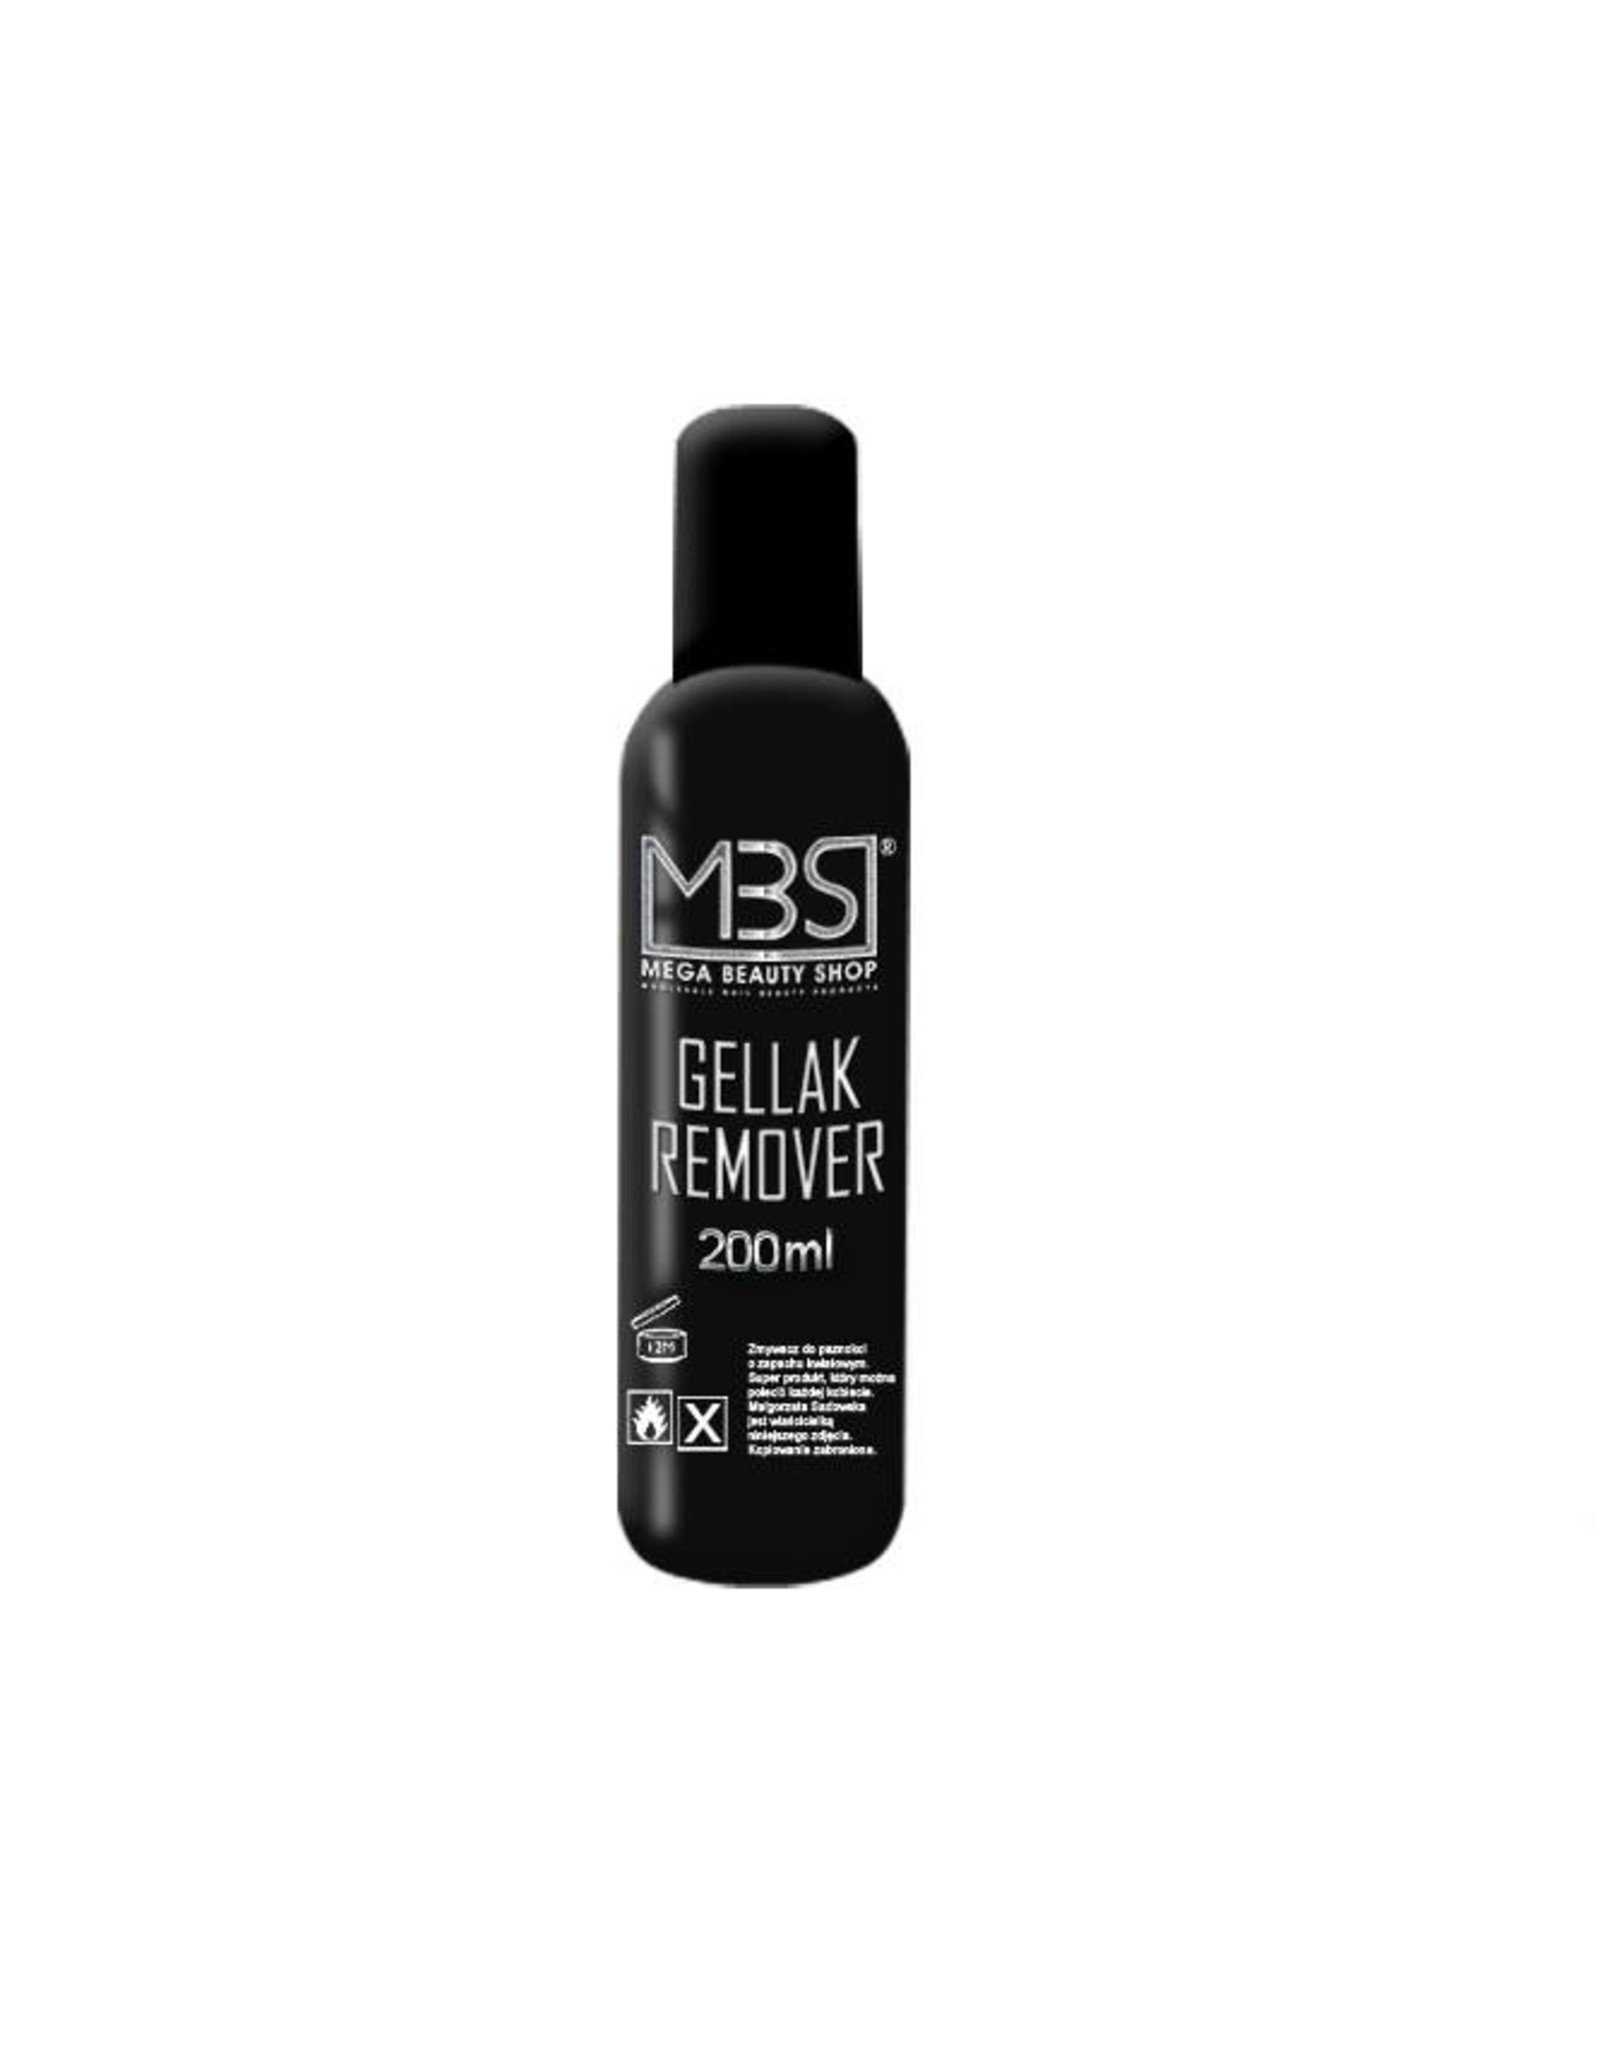 Mega Beauty Shop® Gellak remover (200 ml)  met aardbeiengeur